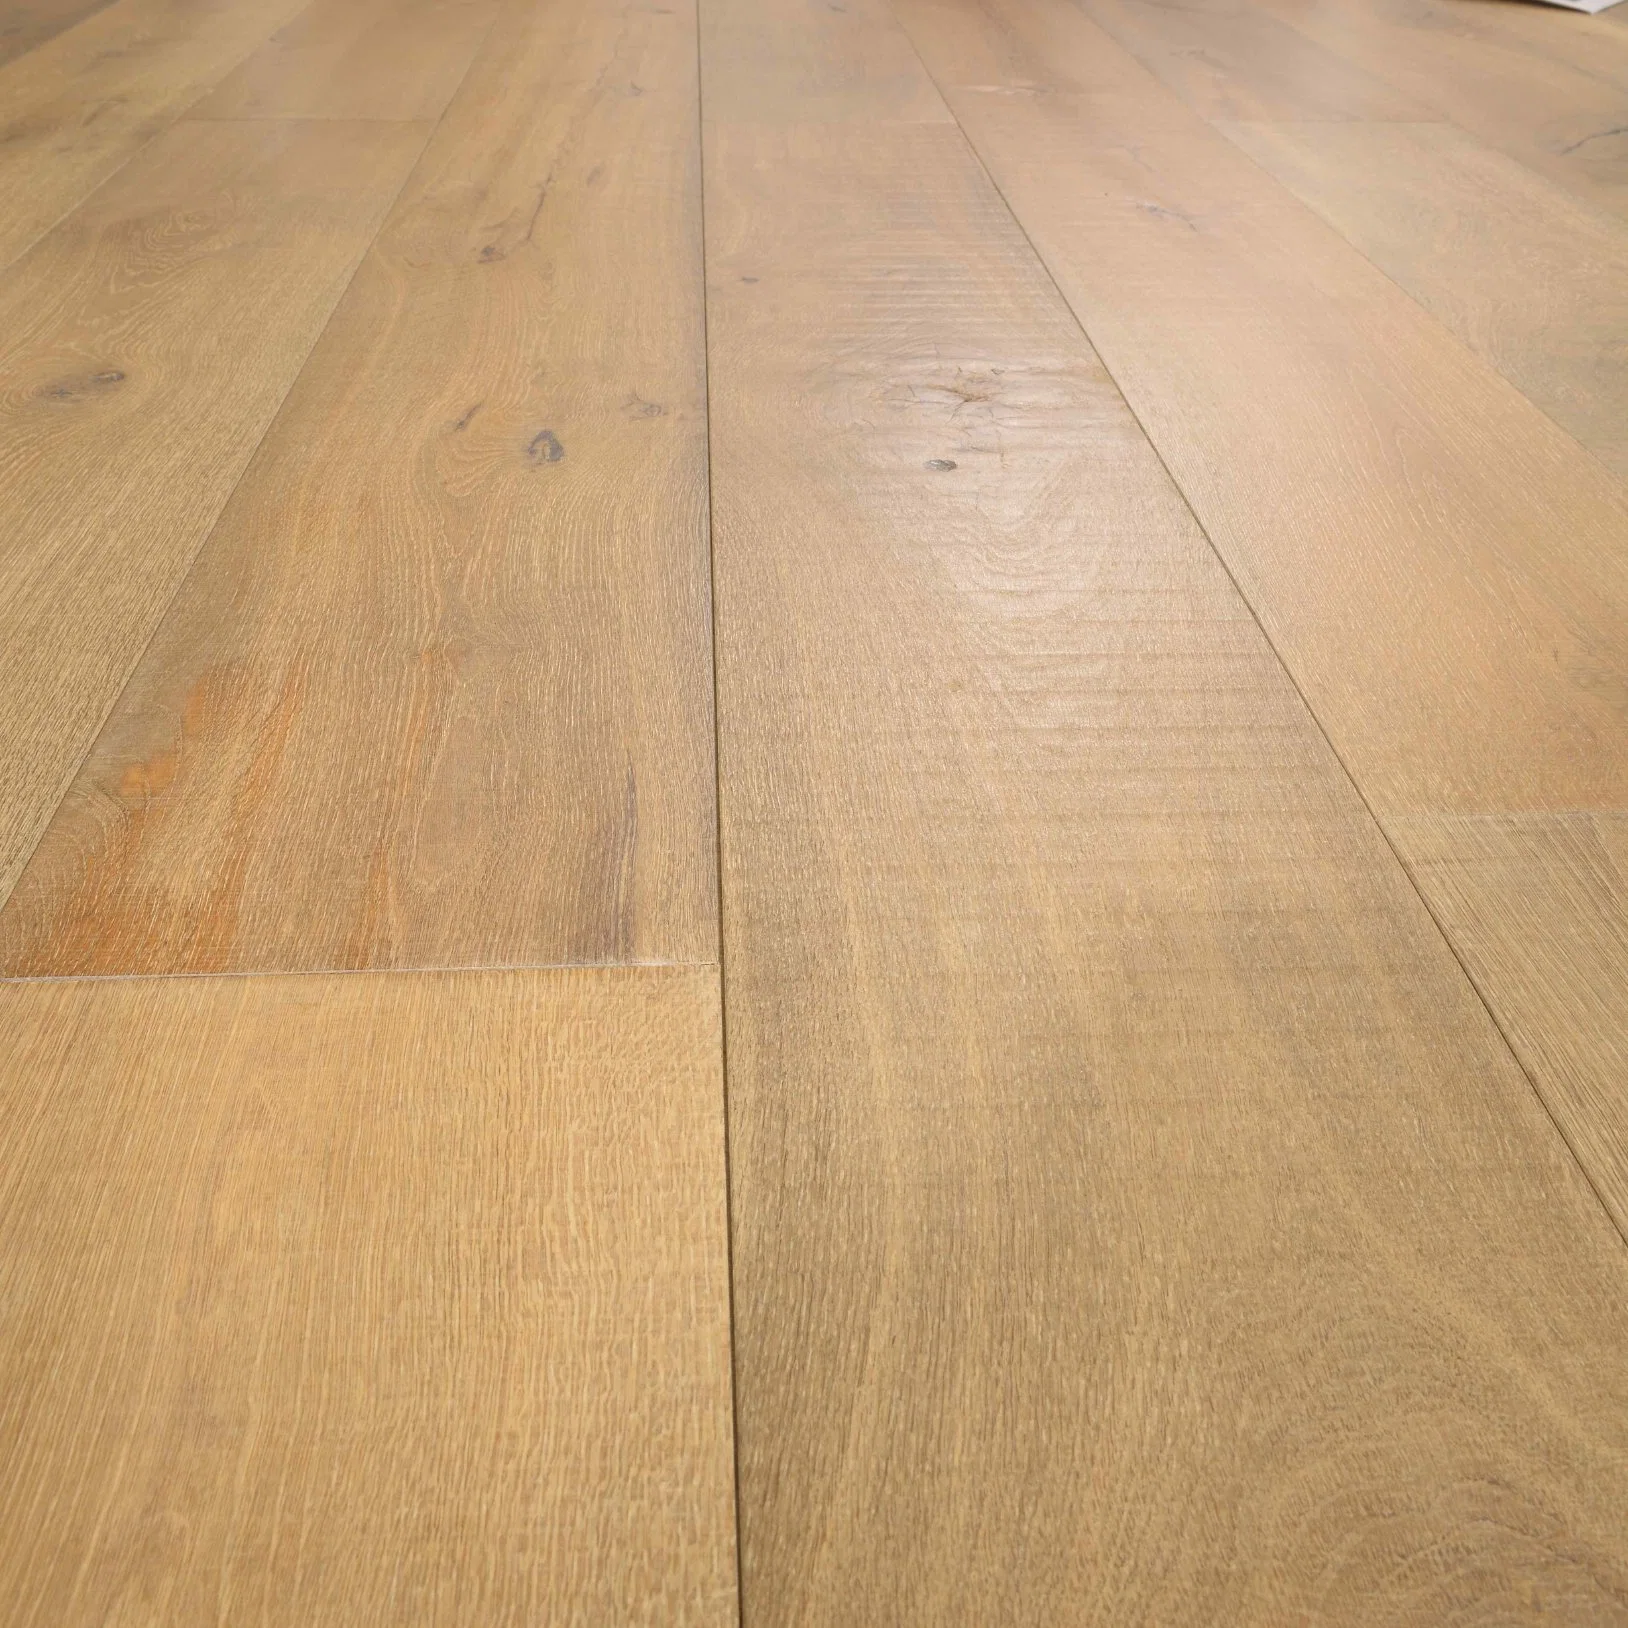 Coupe transversale du bois de chêne européen Engineered Parquet Hardwood Flooring